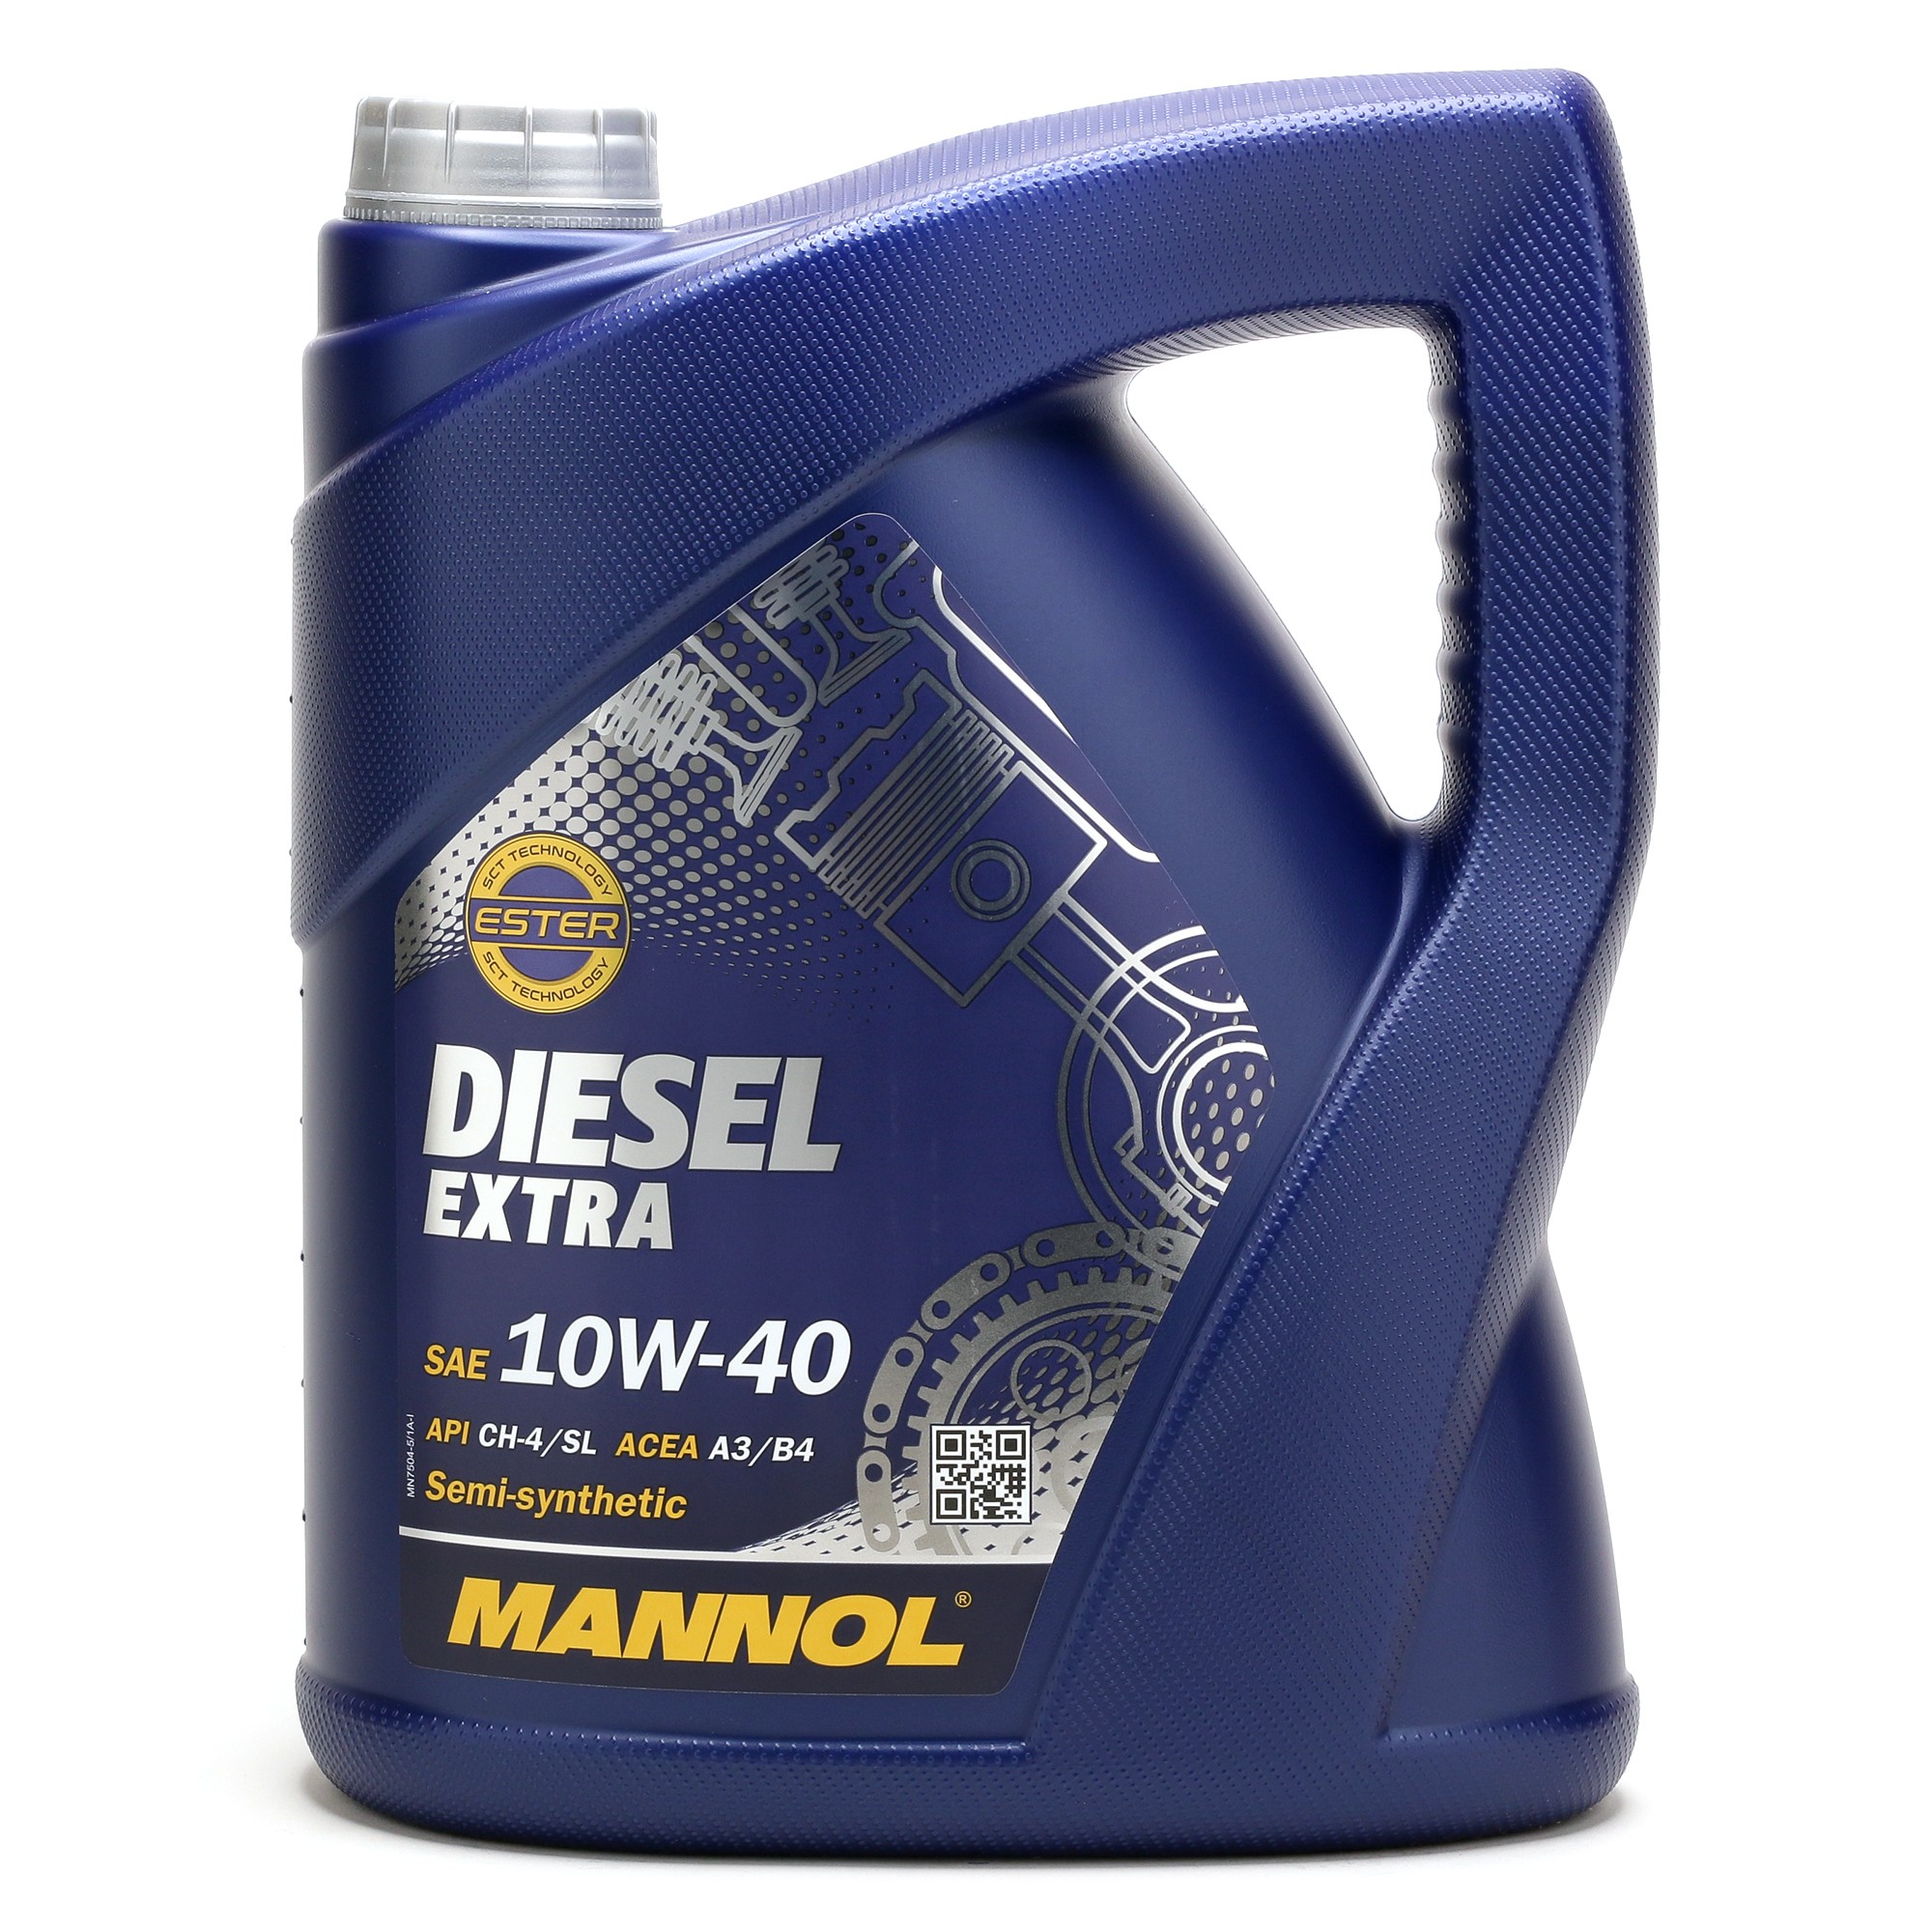 10W-40 Mannol 7504 Diesel Extra Motoröl 5 Liter